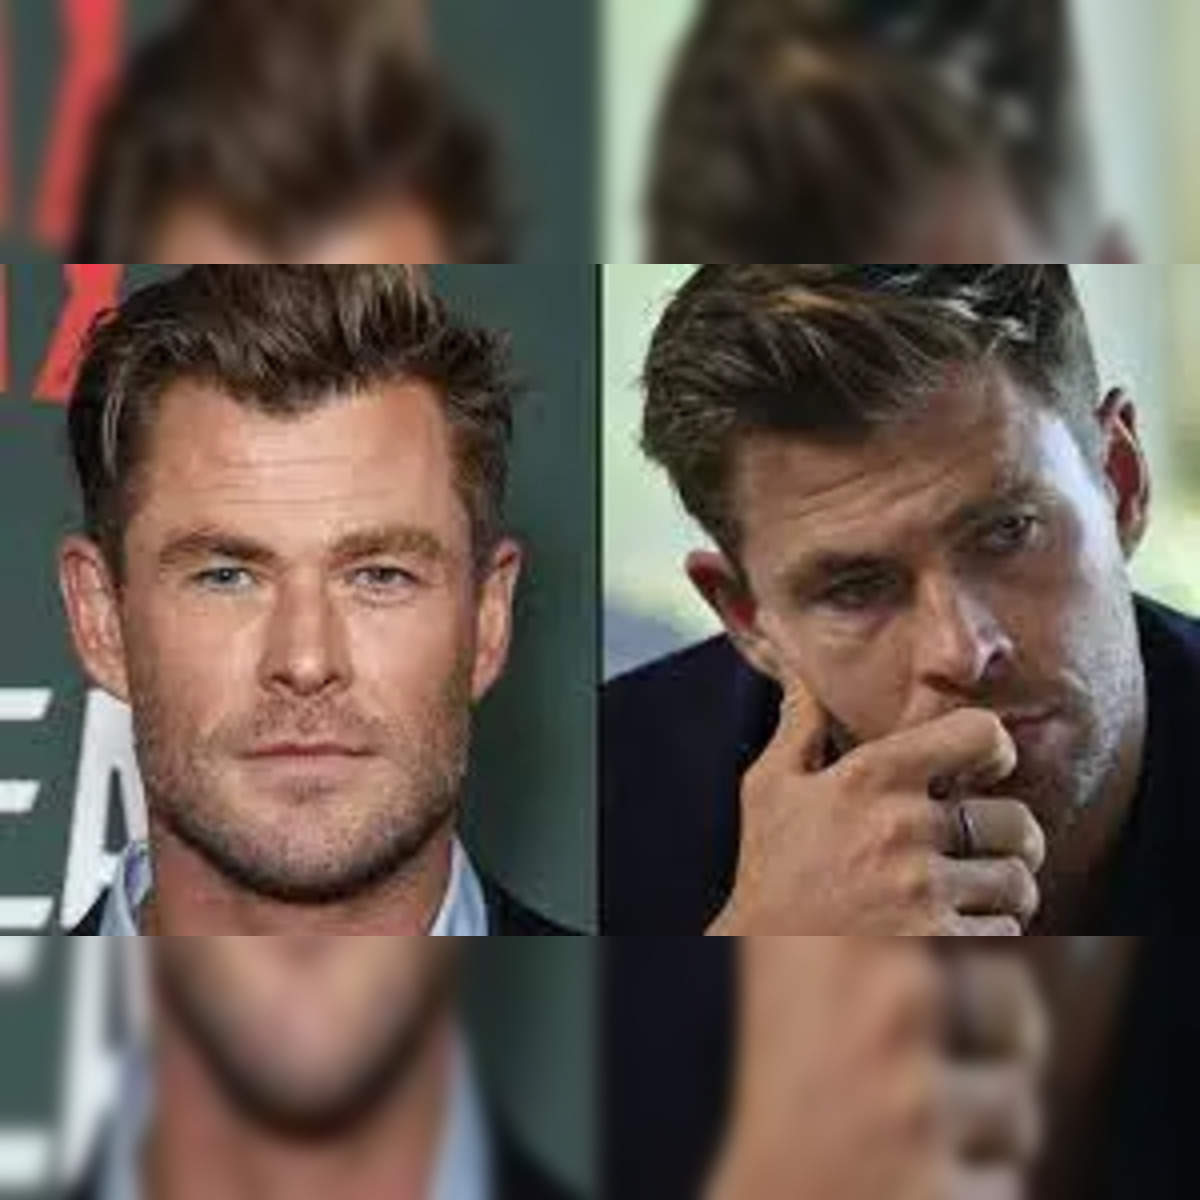 Chris Hemsworth Alzheimer's revelation highlights prevention importance